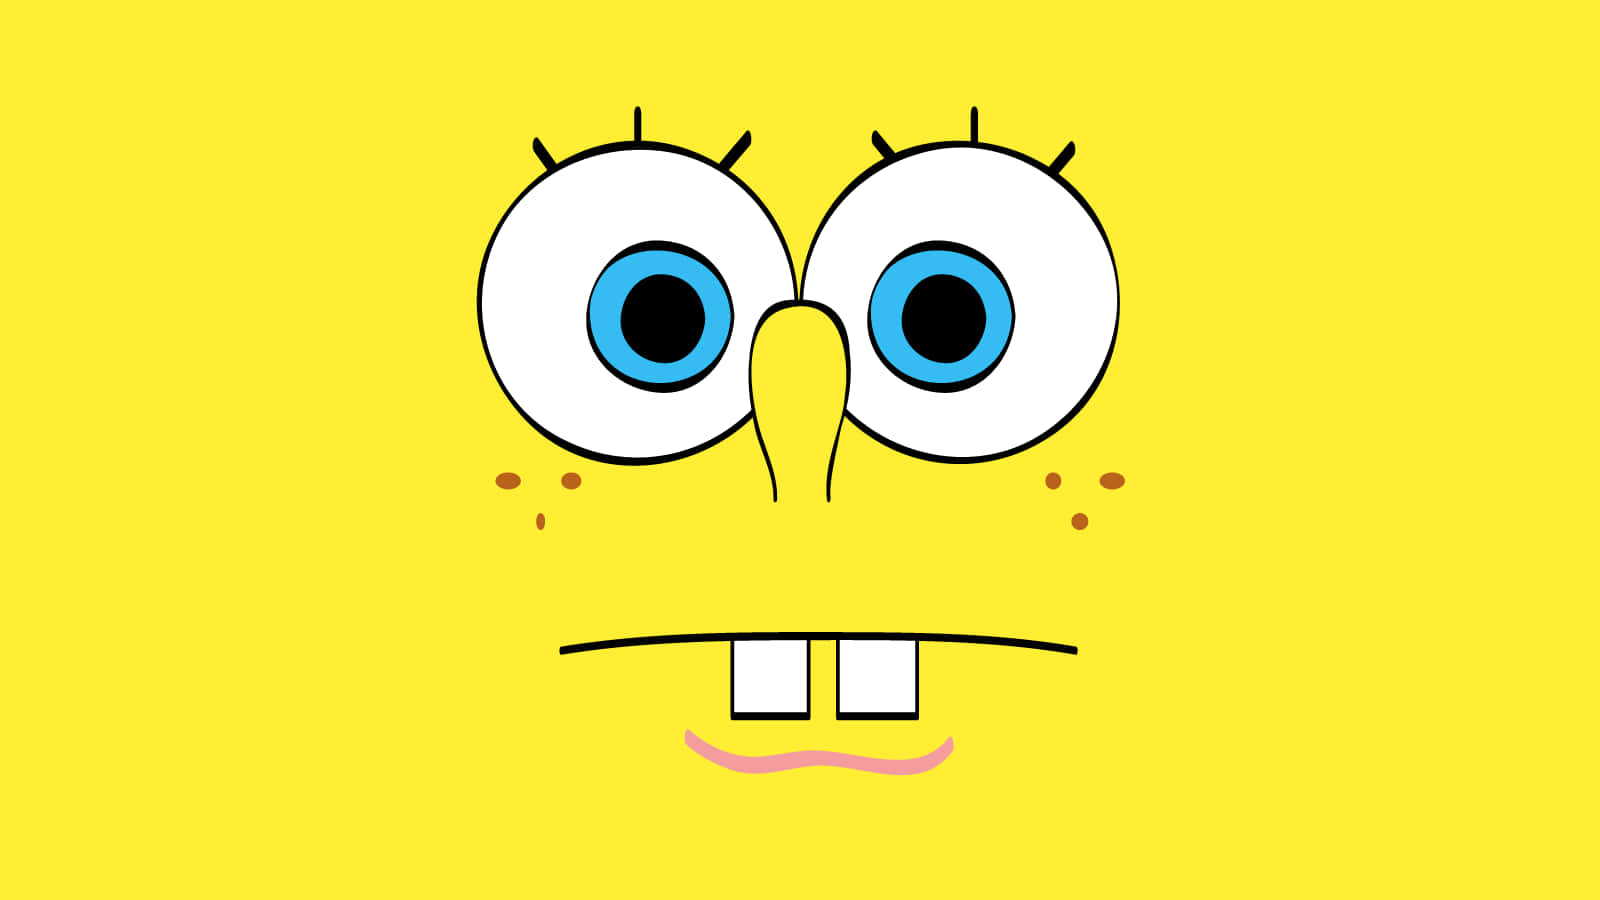 Spongebob Squarepants Face With Blue Eyes On Yellow Background Background